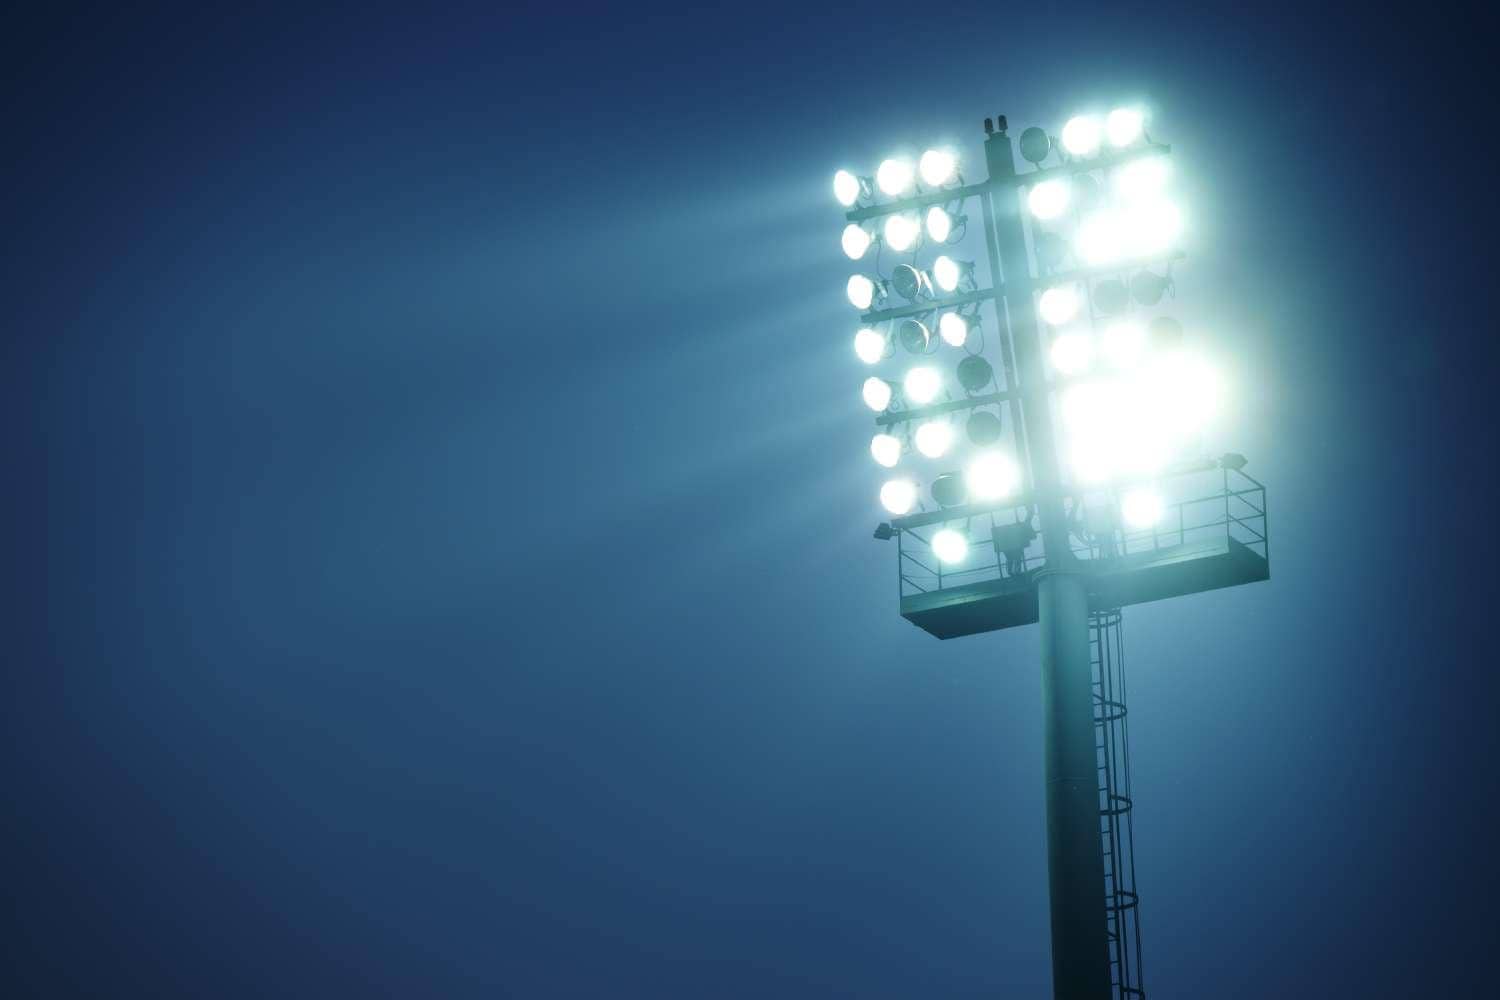 Stadium lights at night